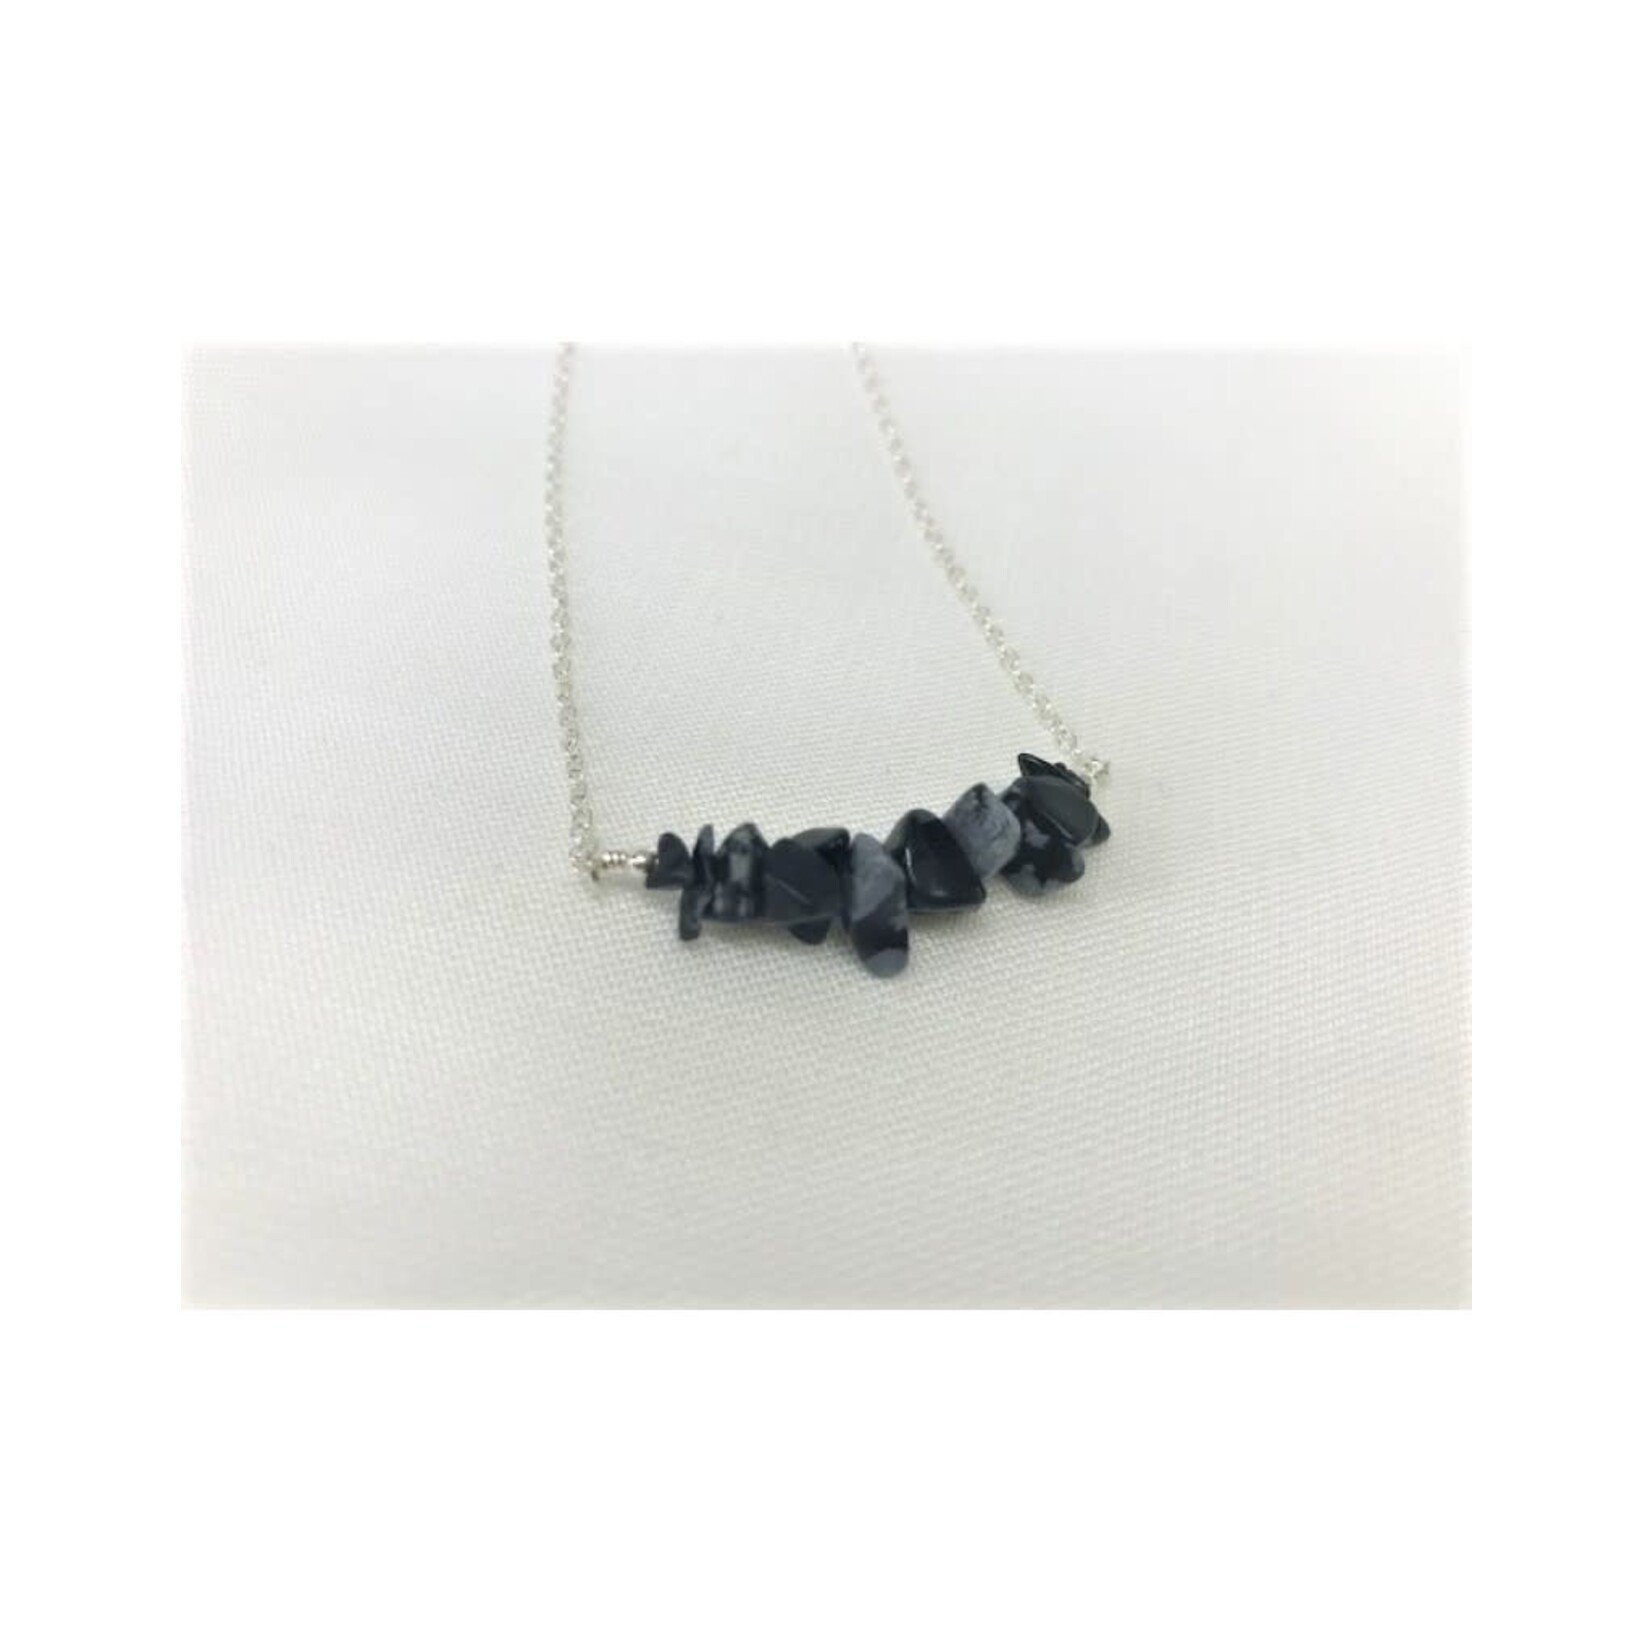 Gemstone Bar Necklace - Obsidian